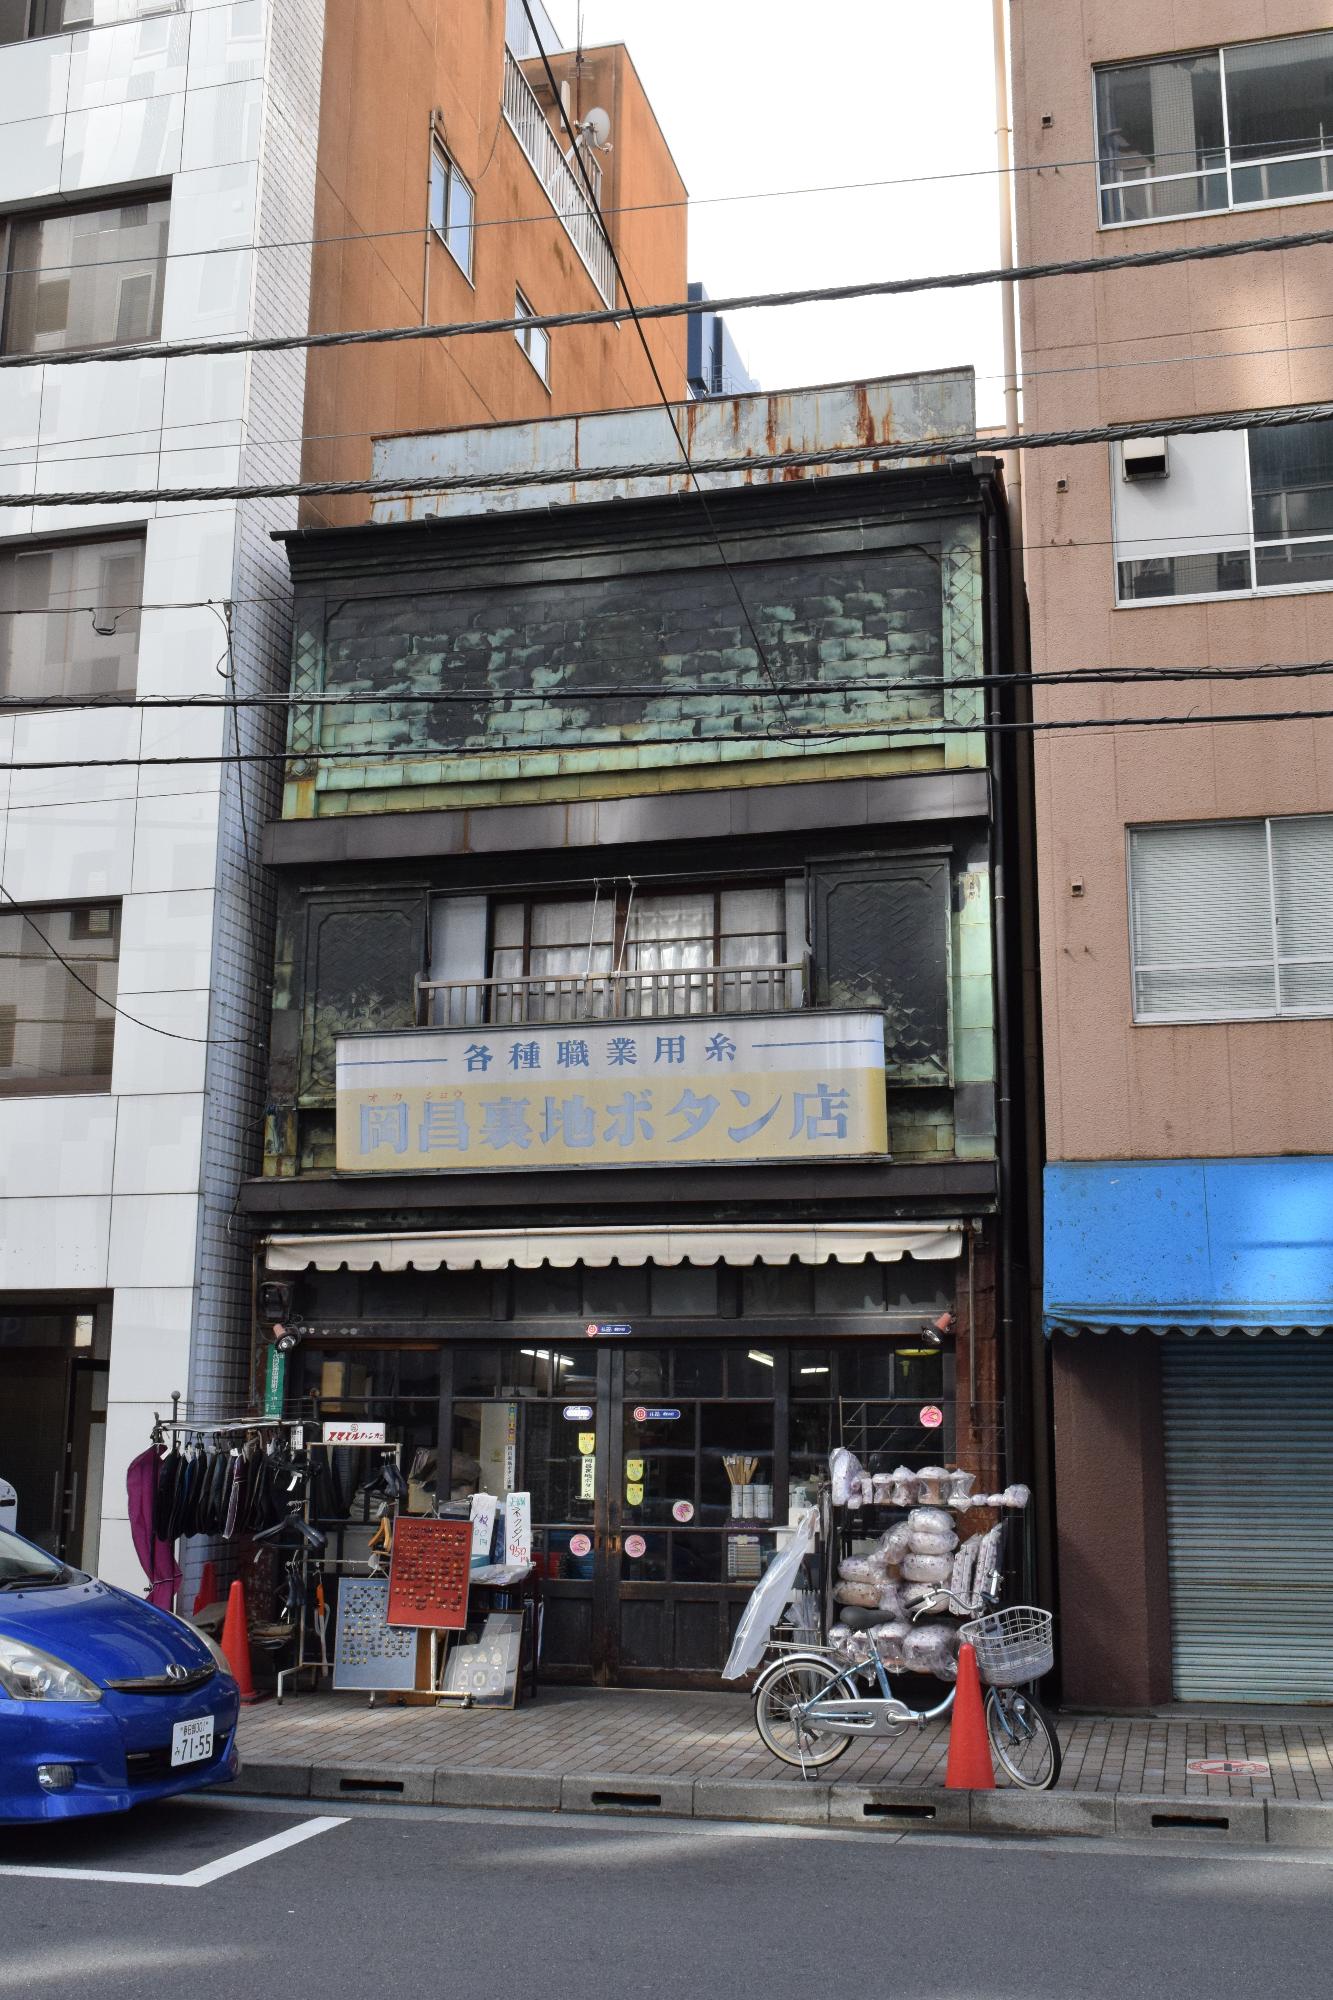 各種職業用糸 岡昌裏地ボタン店の看板が設置された店舗正面を写した写真